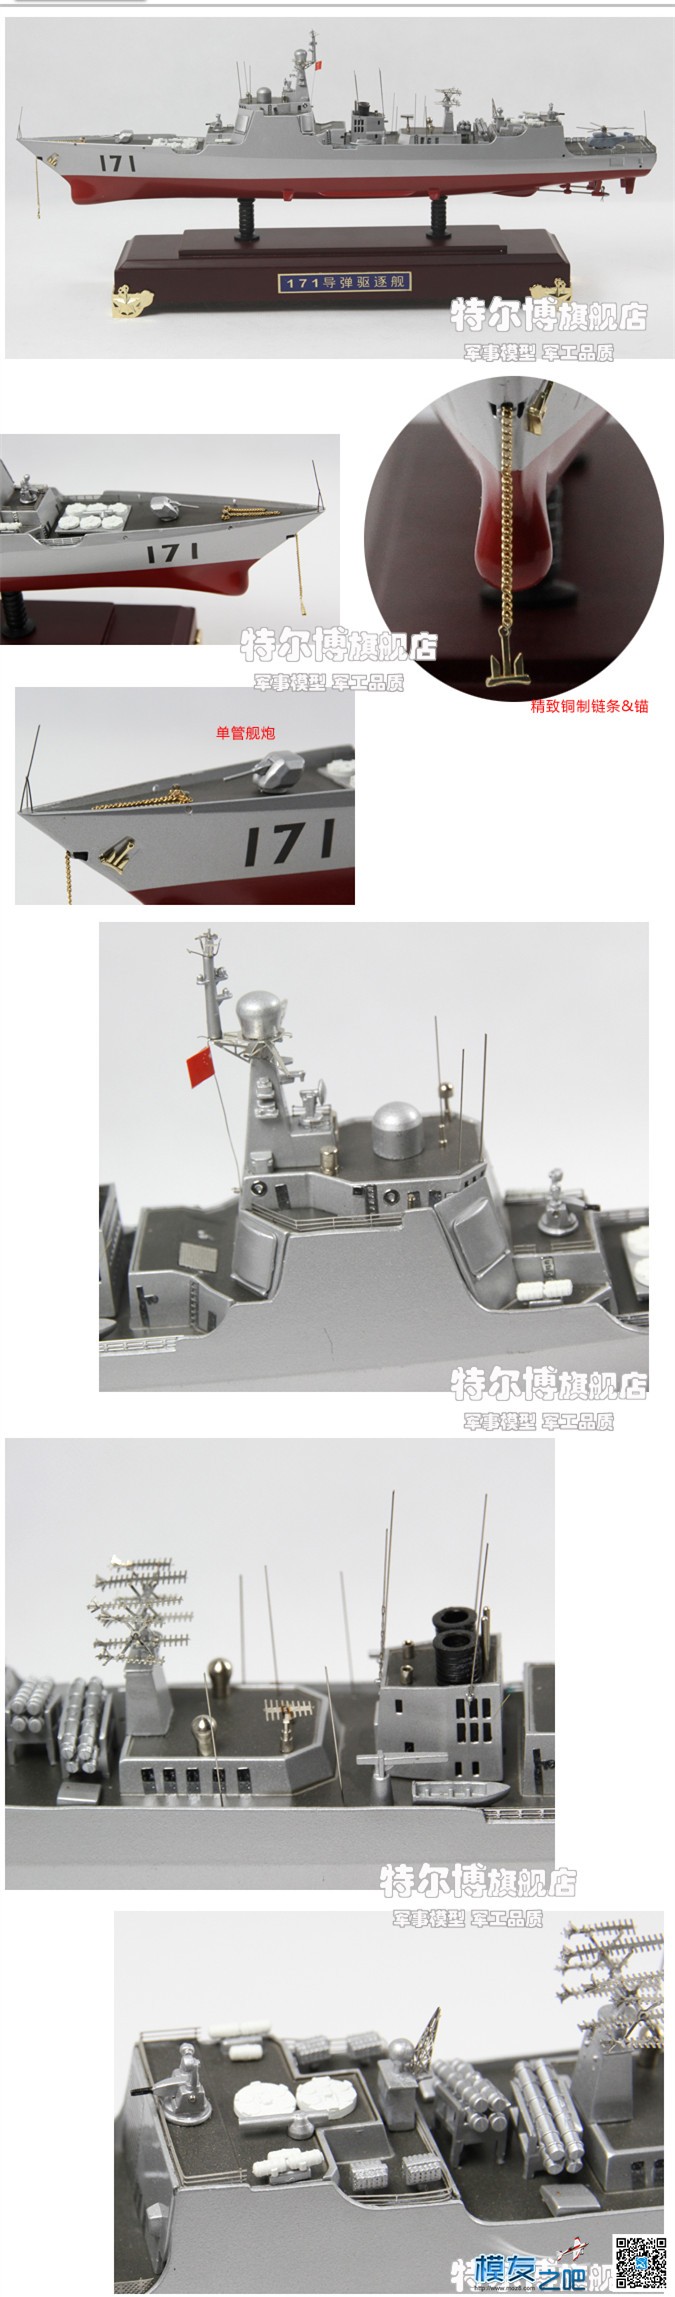 052C级战舰共建6艘目前已经全部完工 最先进的战舰 作者:特尔博模型 1448 